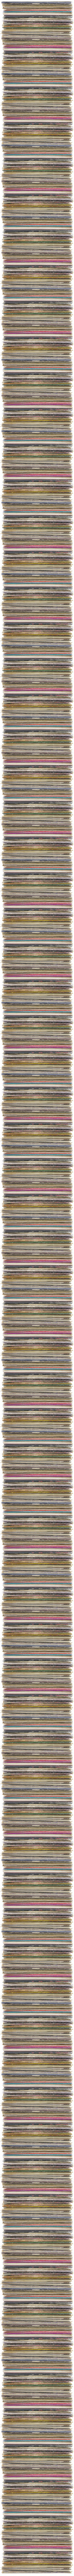 3180 Vinyl Alben passen auf einen iPod classic